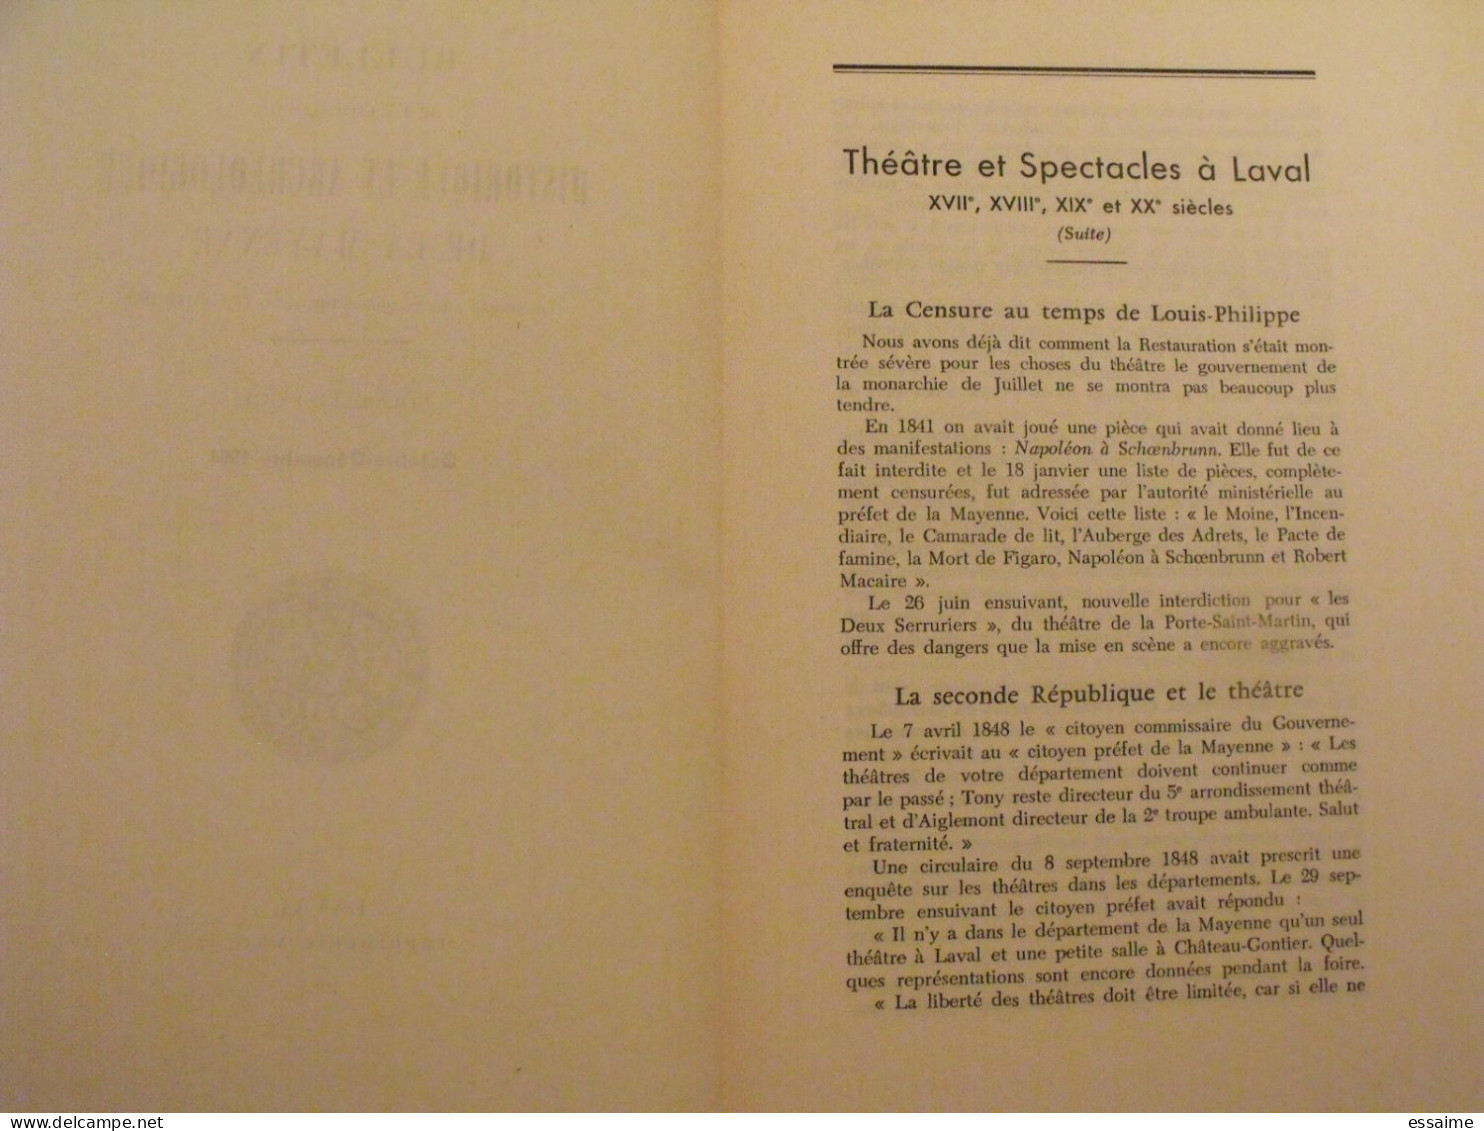 Bulletin Historique Et Archéologique De La Mayenne. 1964, N° 4 (236) . Laval Chateau-Gontier. Goupil. - Pays De Loire